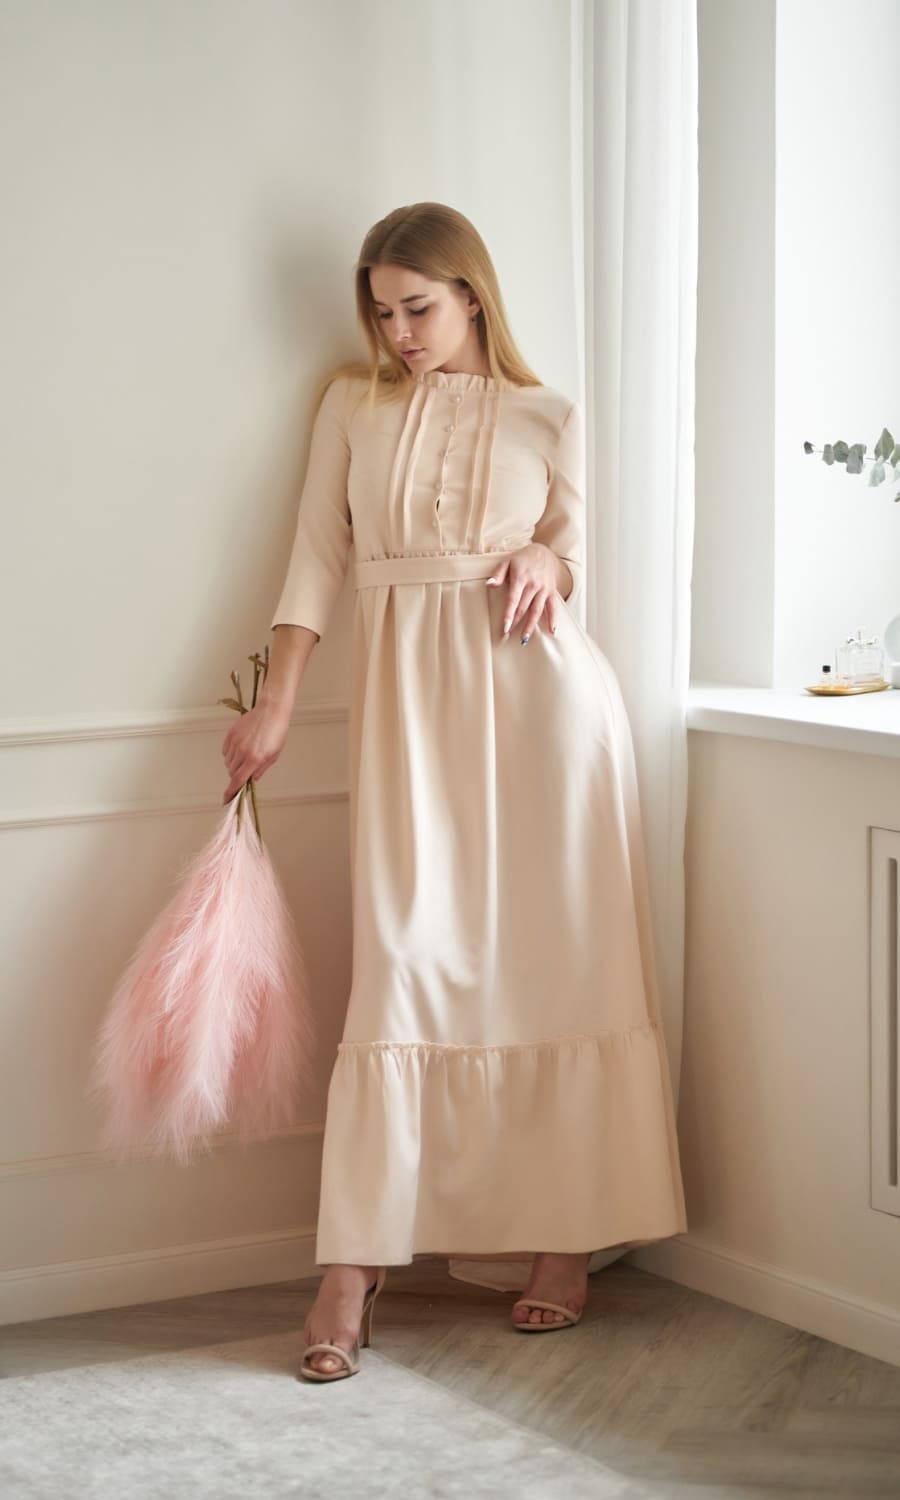 梨形身材修飾洋裝 ▶ 縮腰長洋裝